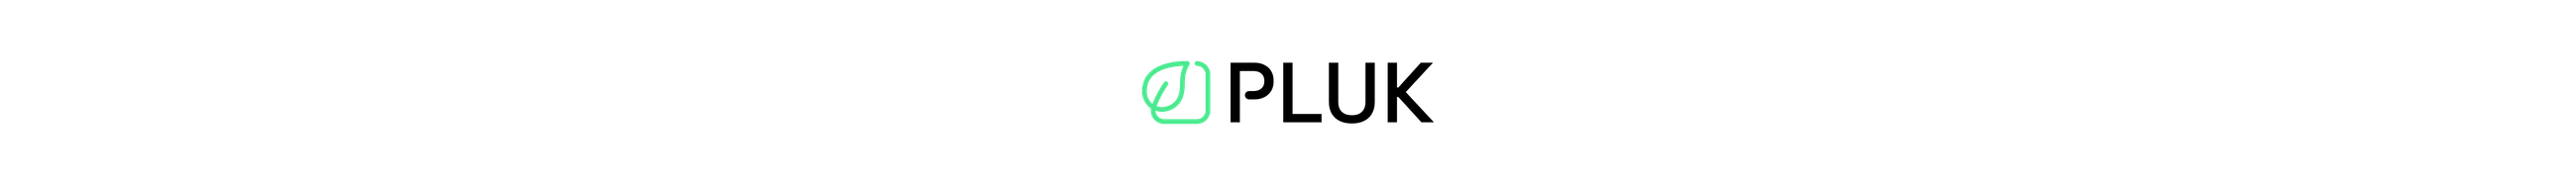 pluk logo